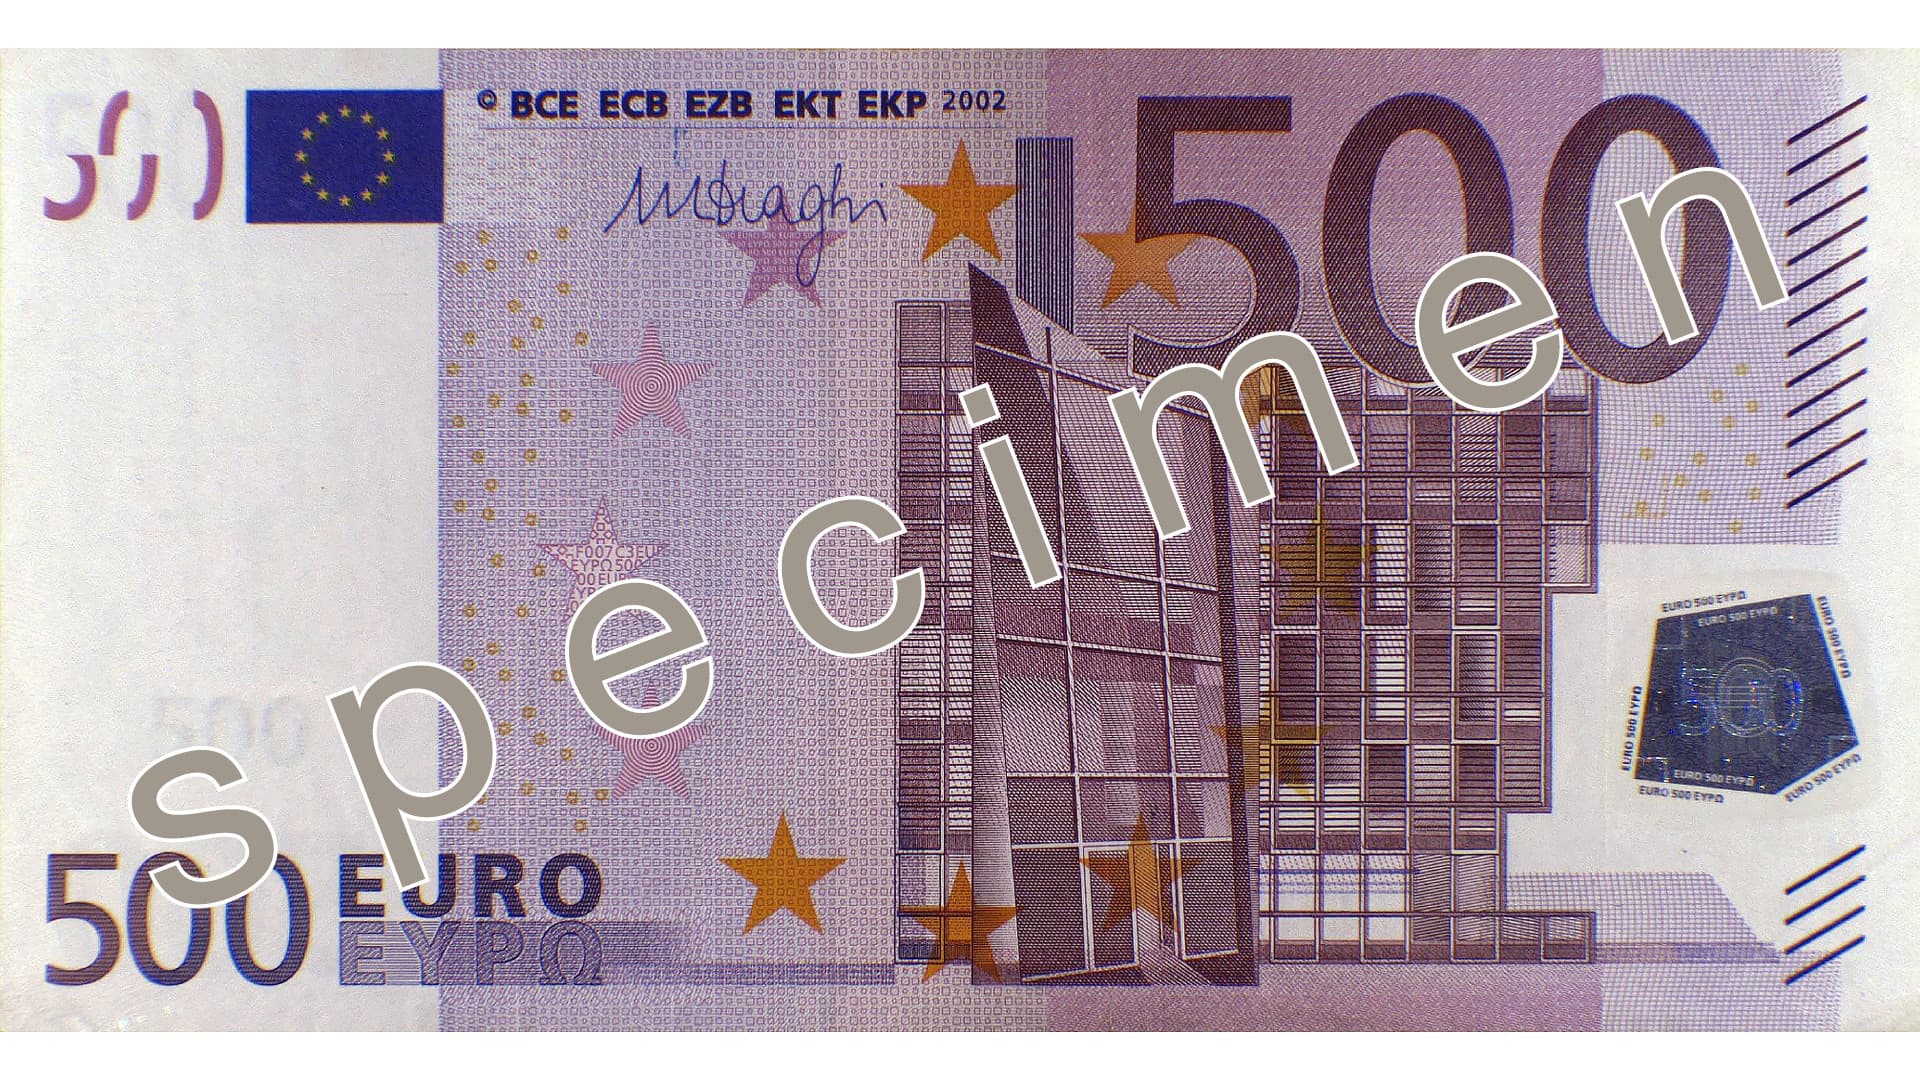 Тысяча евро в долларах. 500 Евро. 500 Эеаро. Банкнота 500 евро. 1000 Евро купюра.